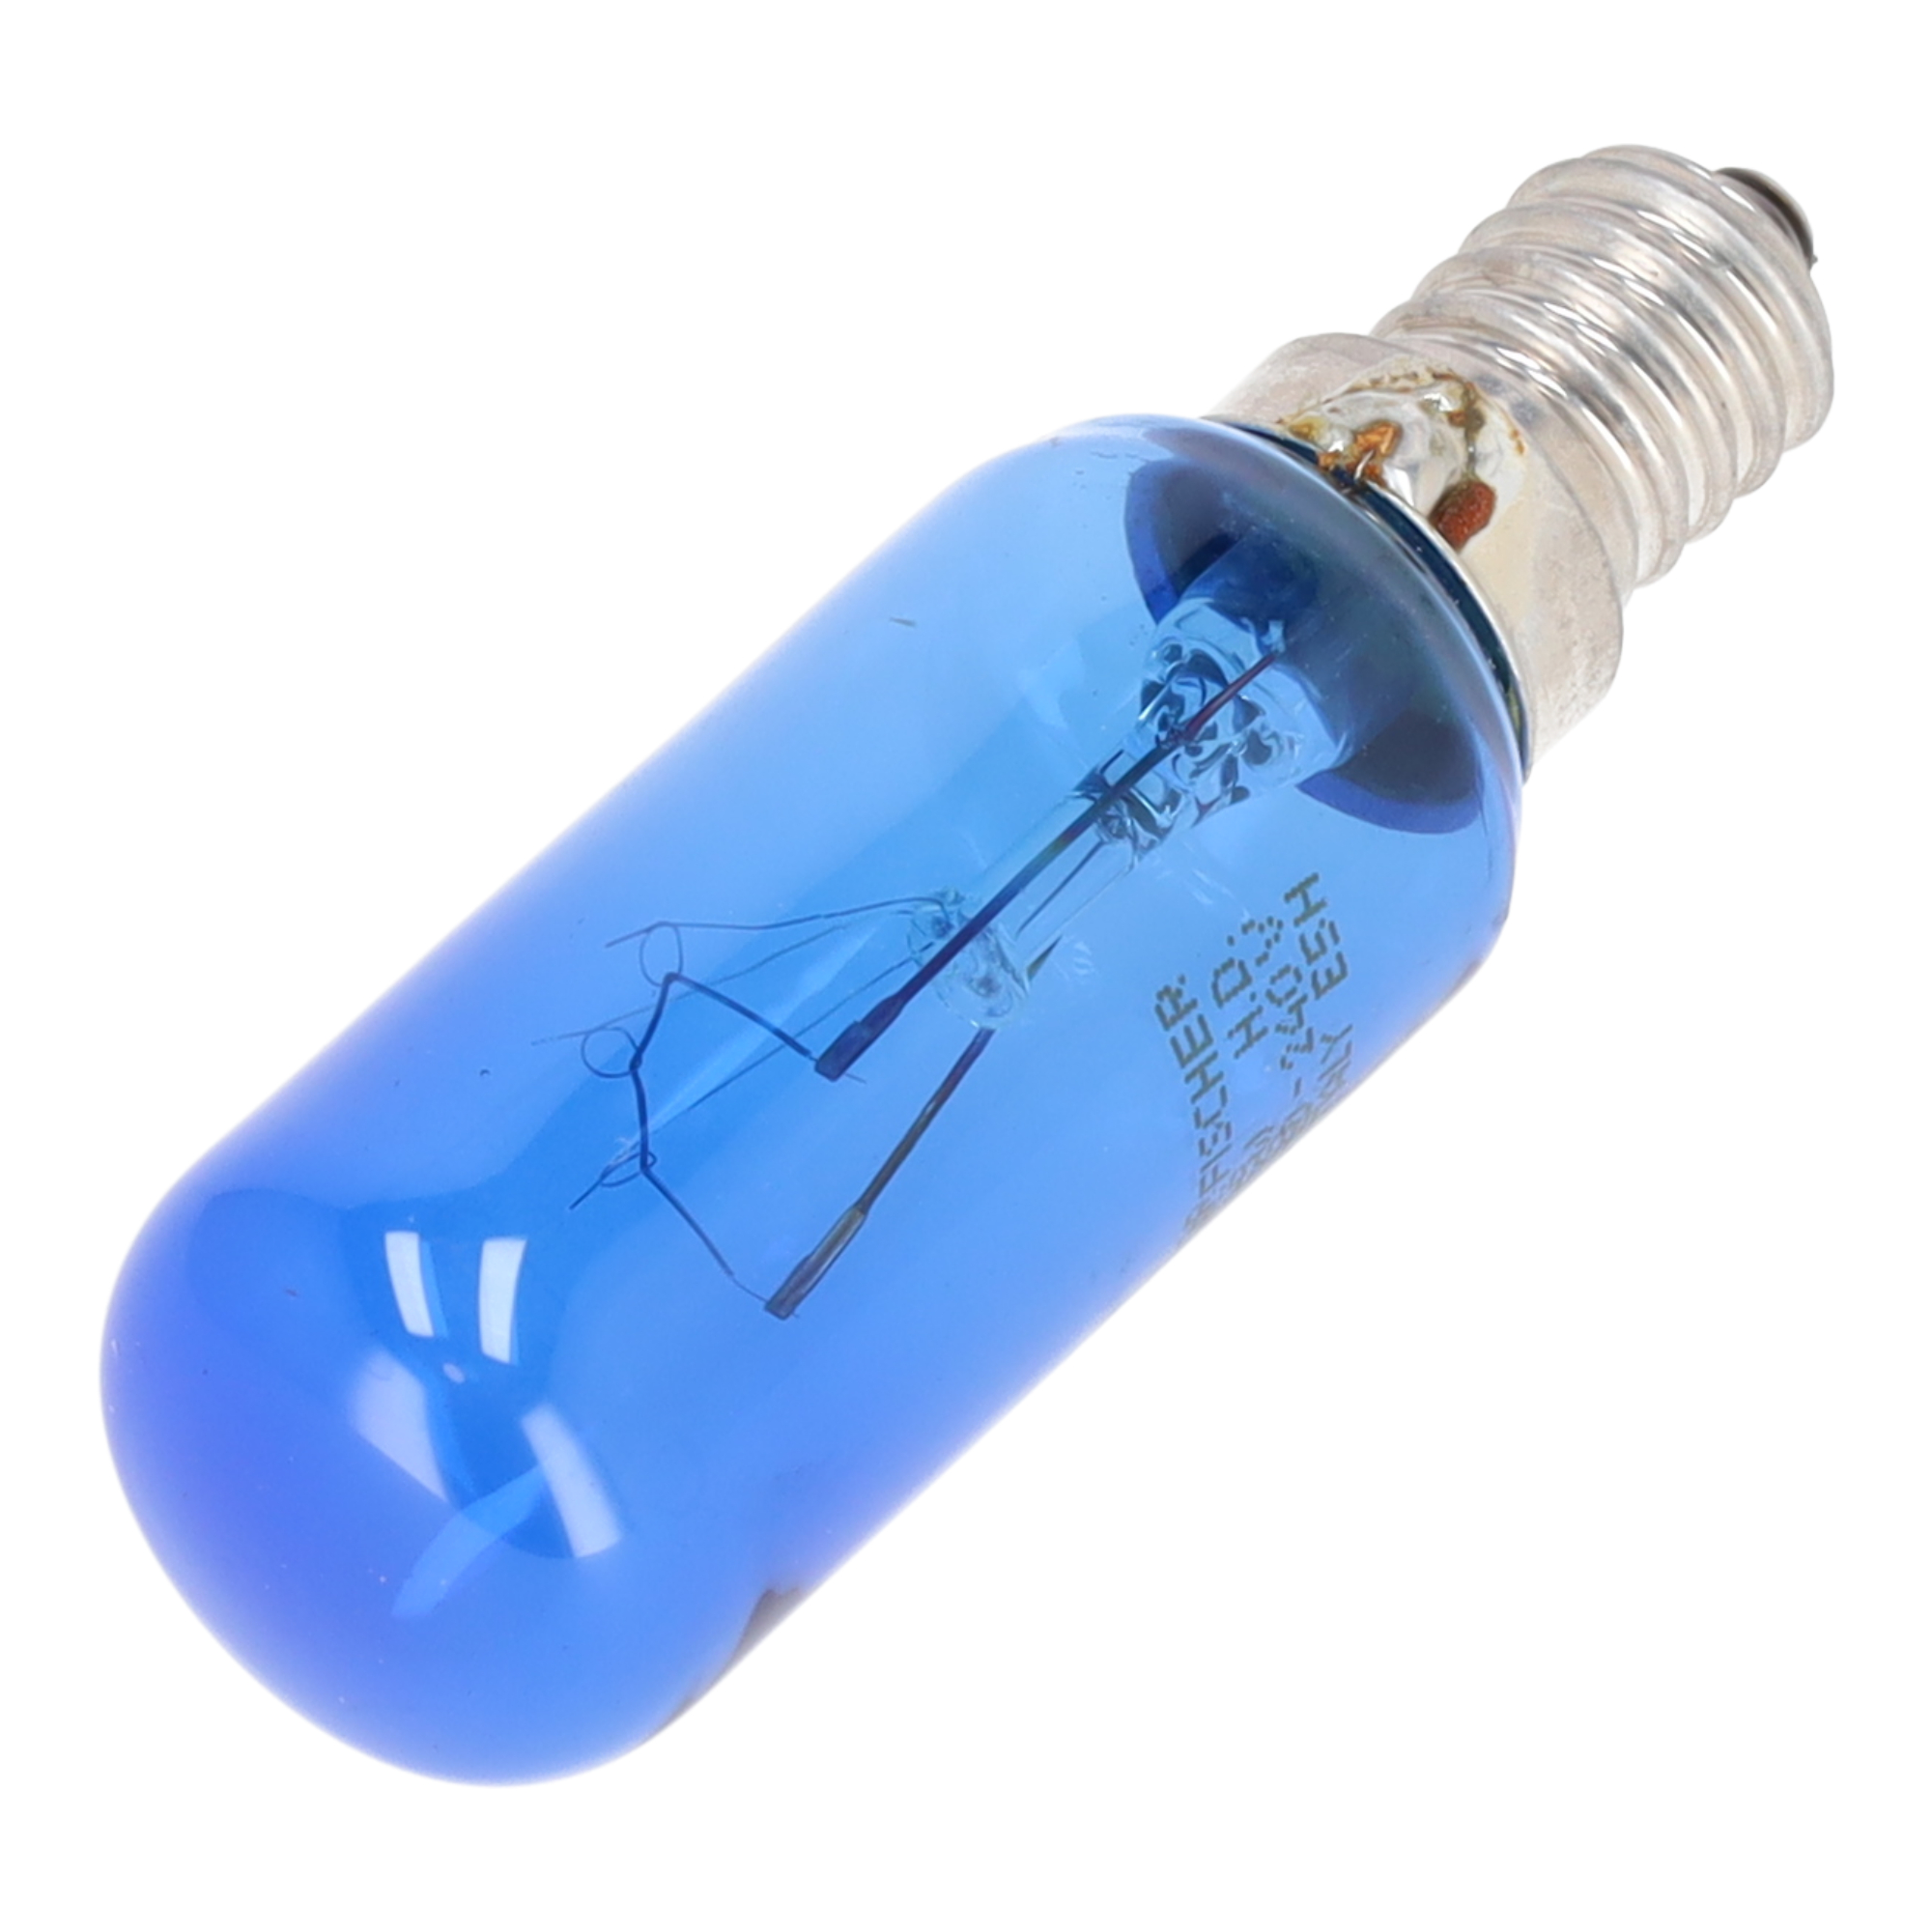 Company Fridge Light Bulb